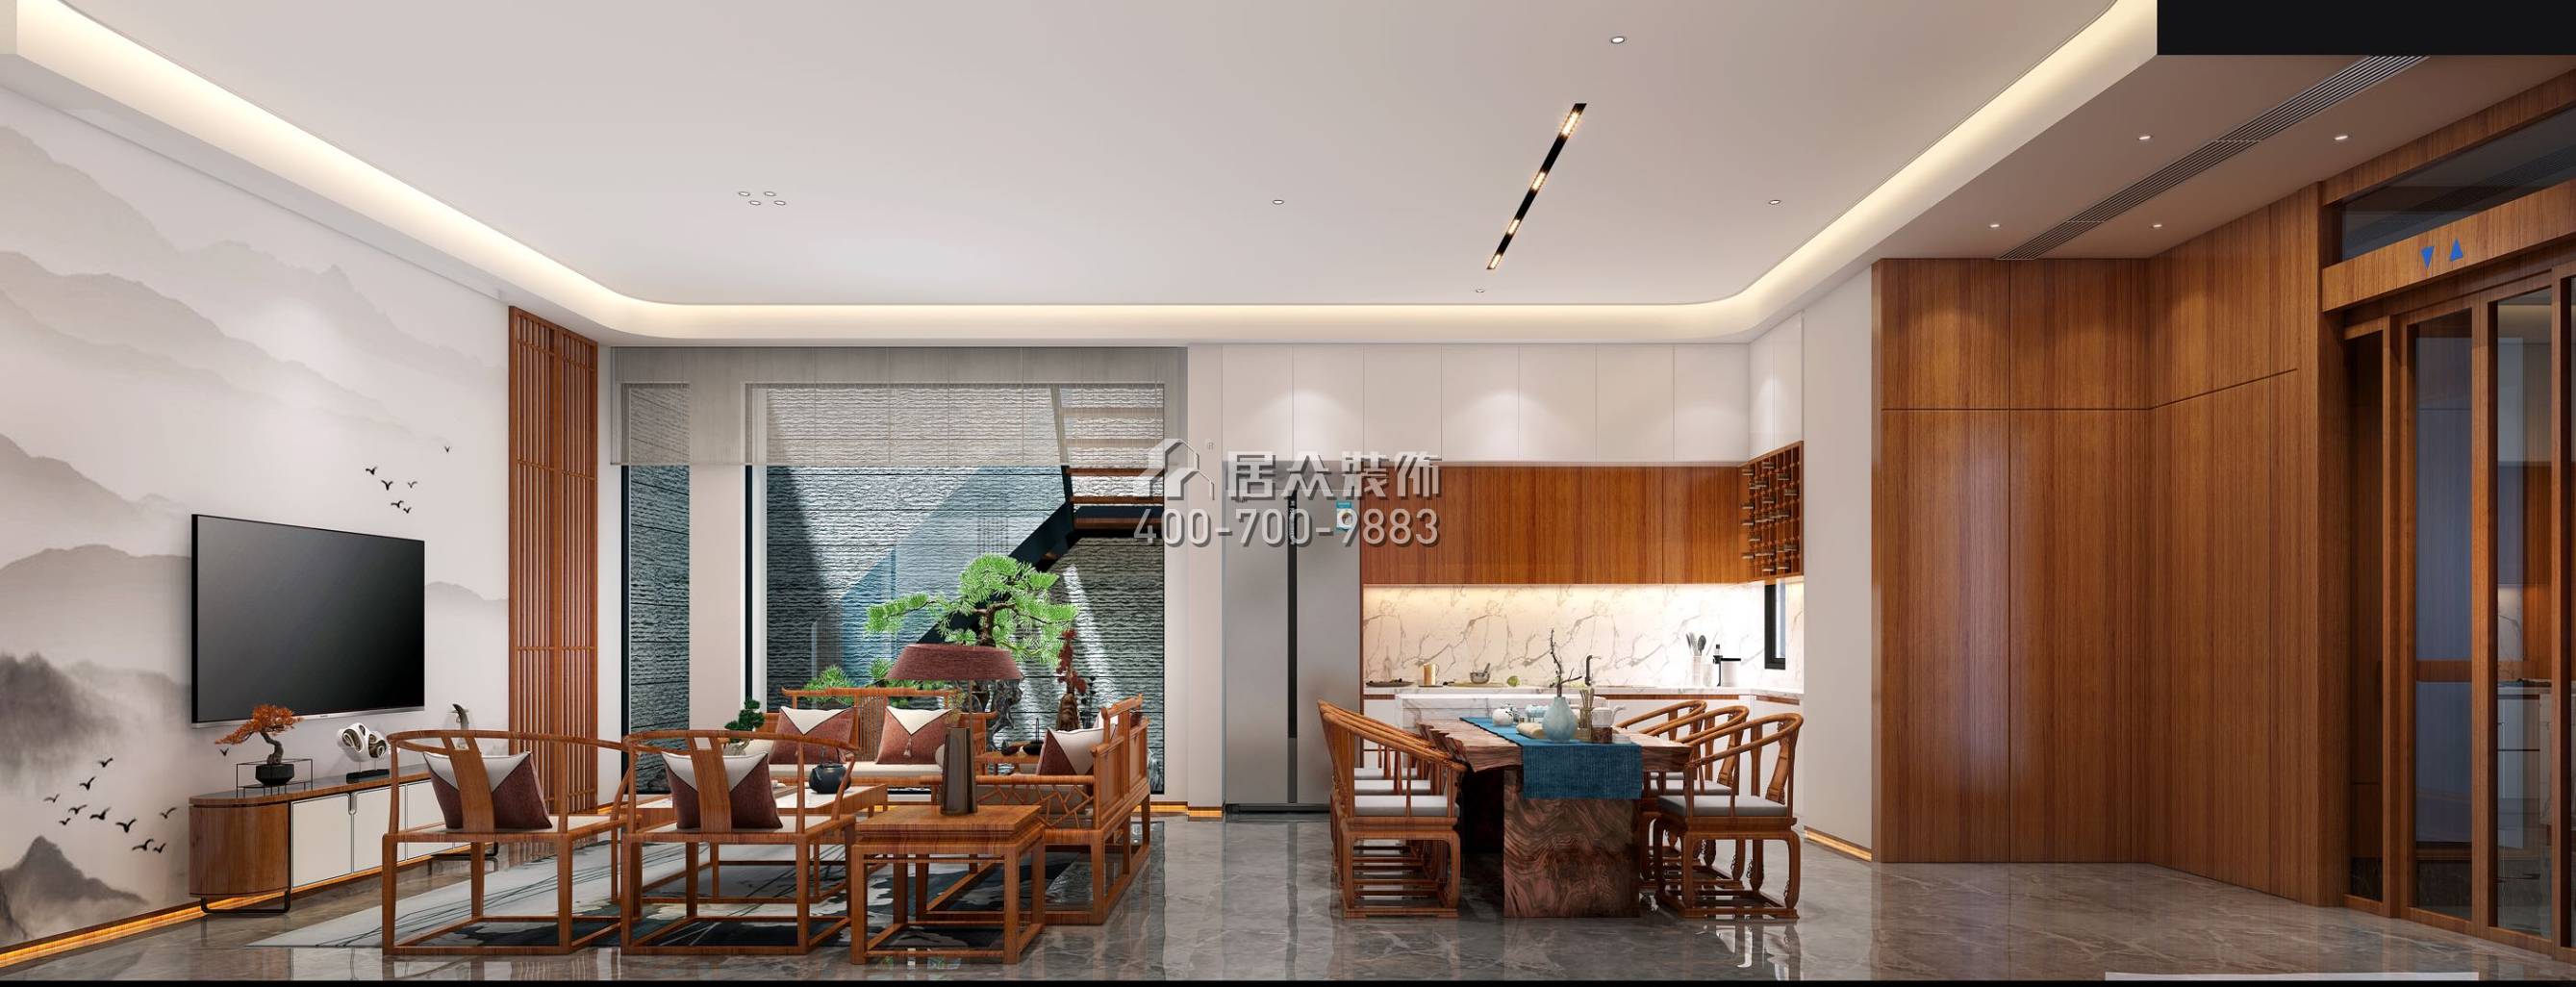 翠湖香山别苑285平方米中式风格复式户型客厅装修效果图